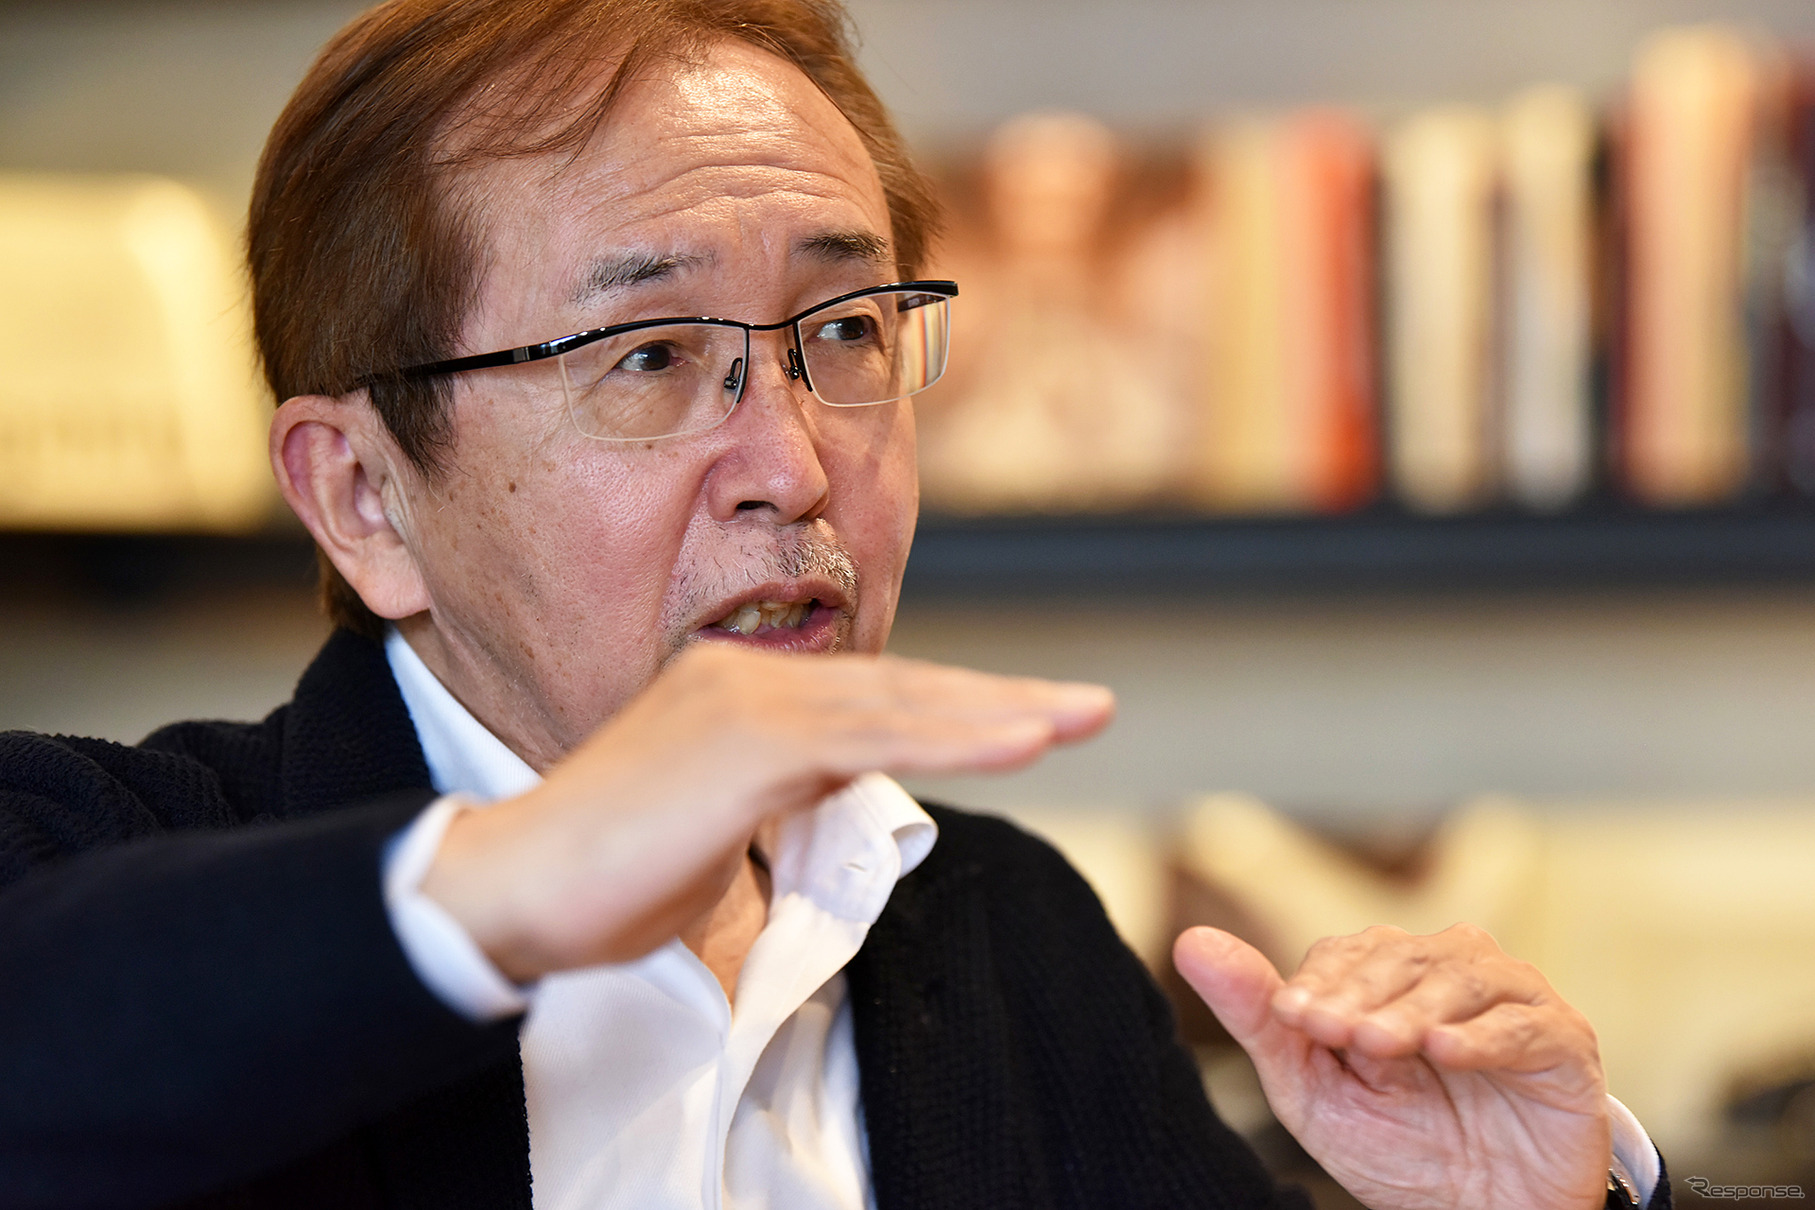 中村史郎氏はいすゞのデザイン部長だった1999年、日産デザインのトップに電撃移籍。2017年3月、日産の専務執行役員を退任した。